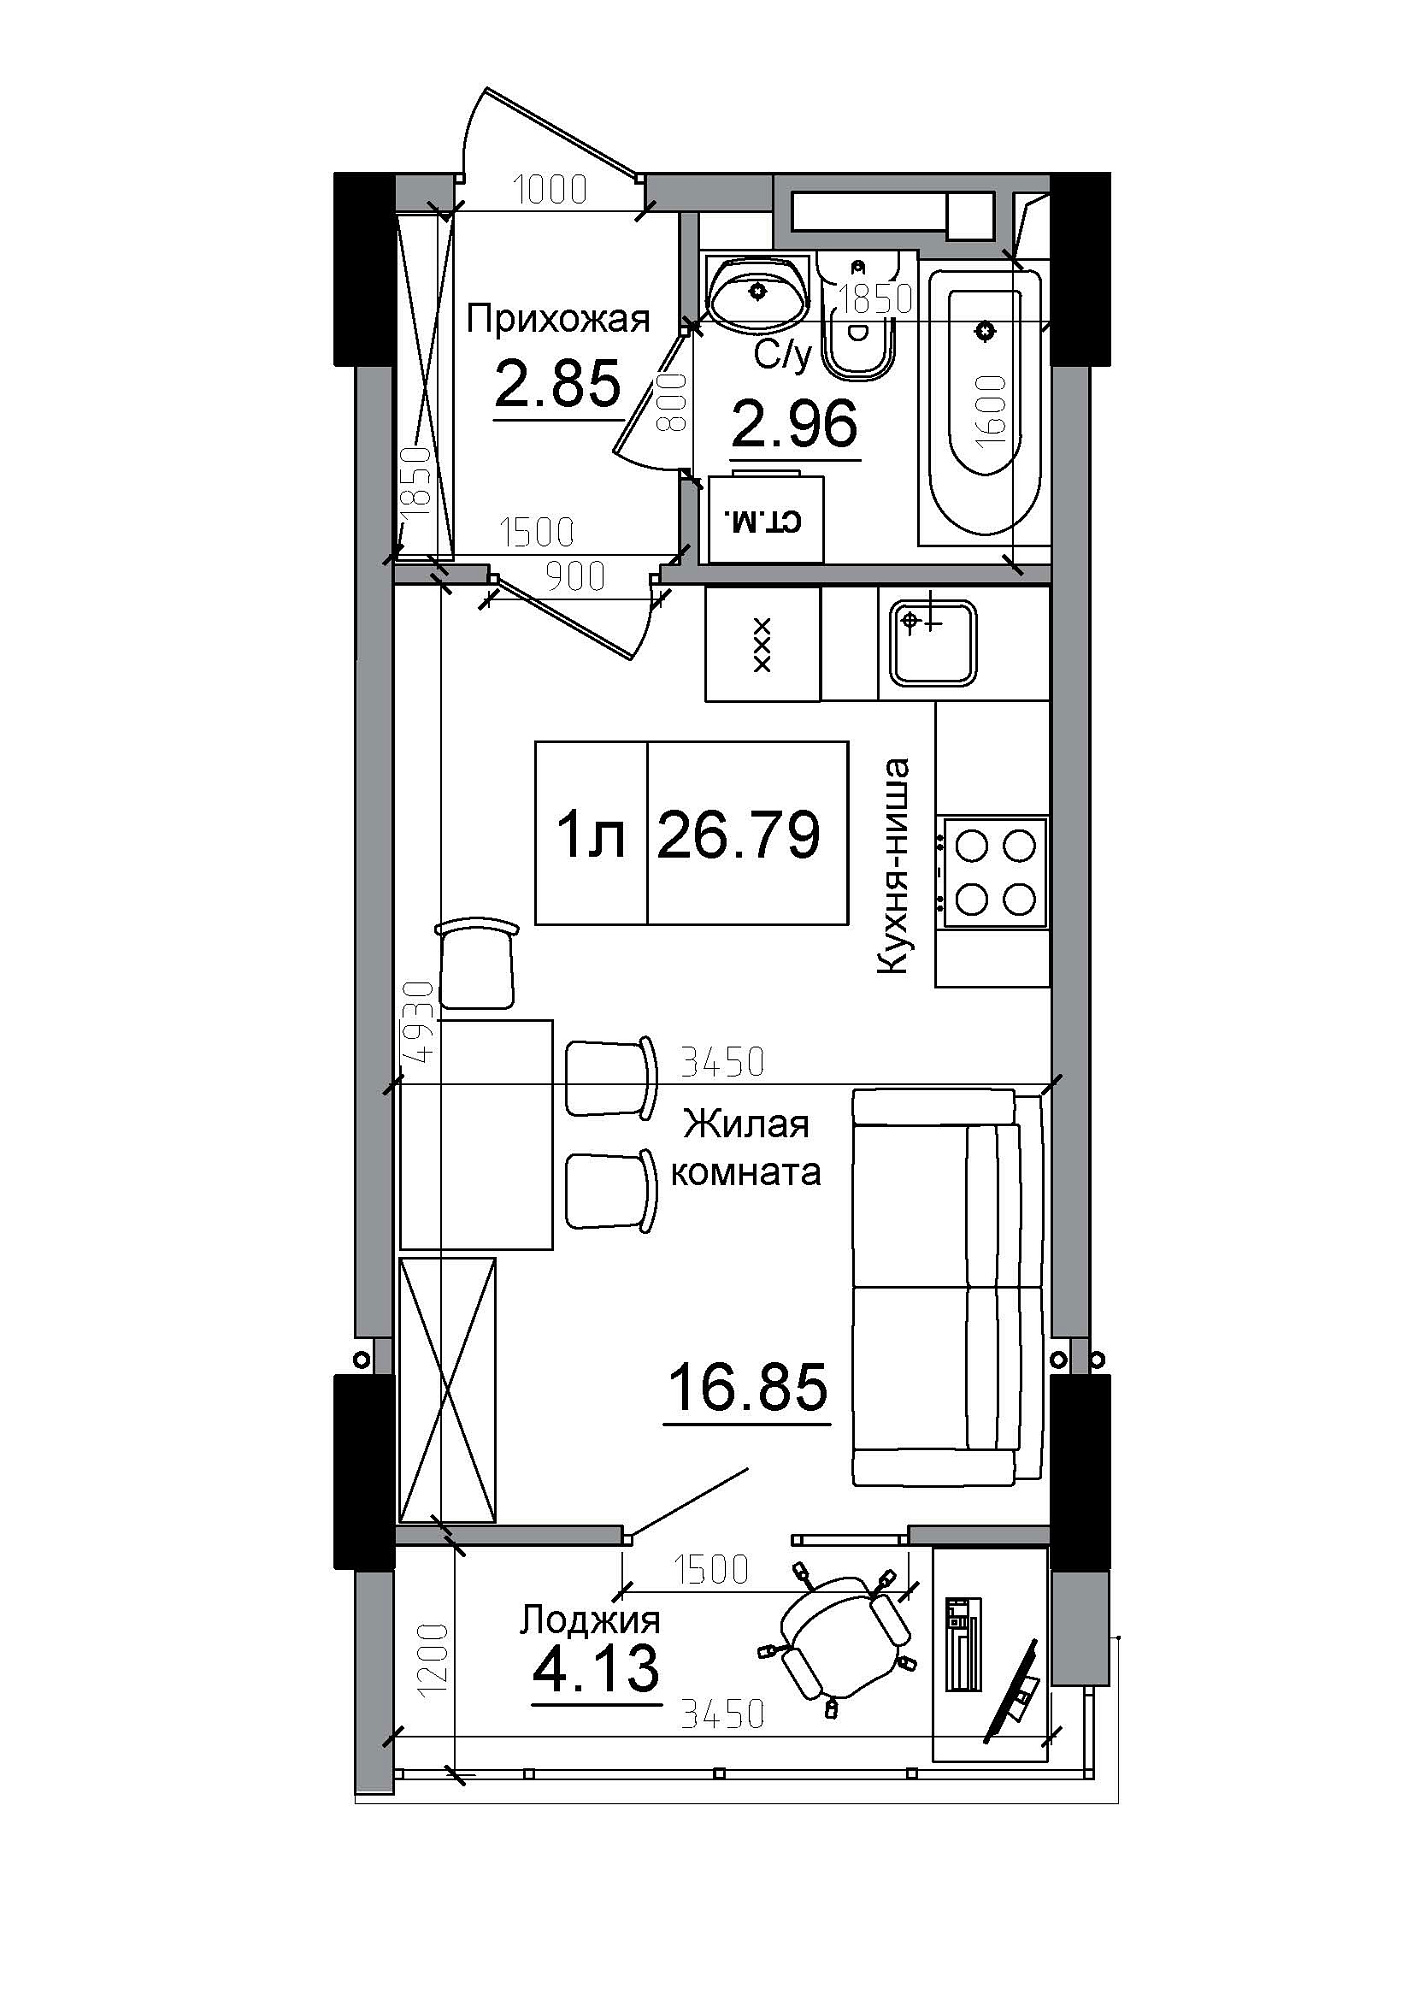 Планування Smart-квартира площею 26.79м2, AB-12-01/00014.